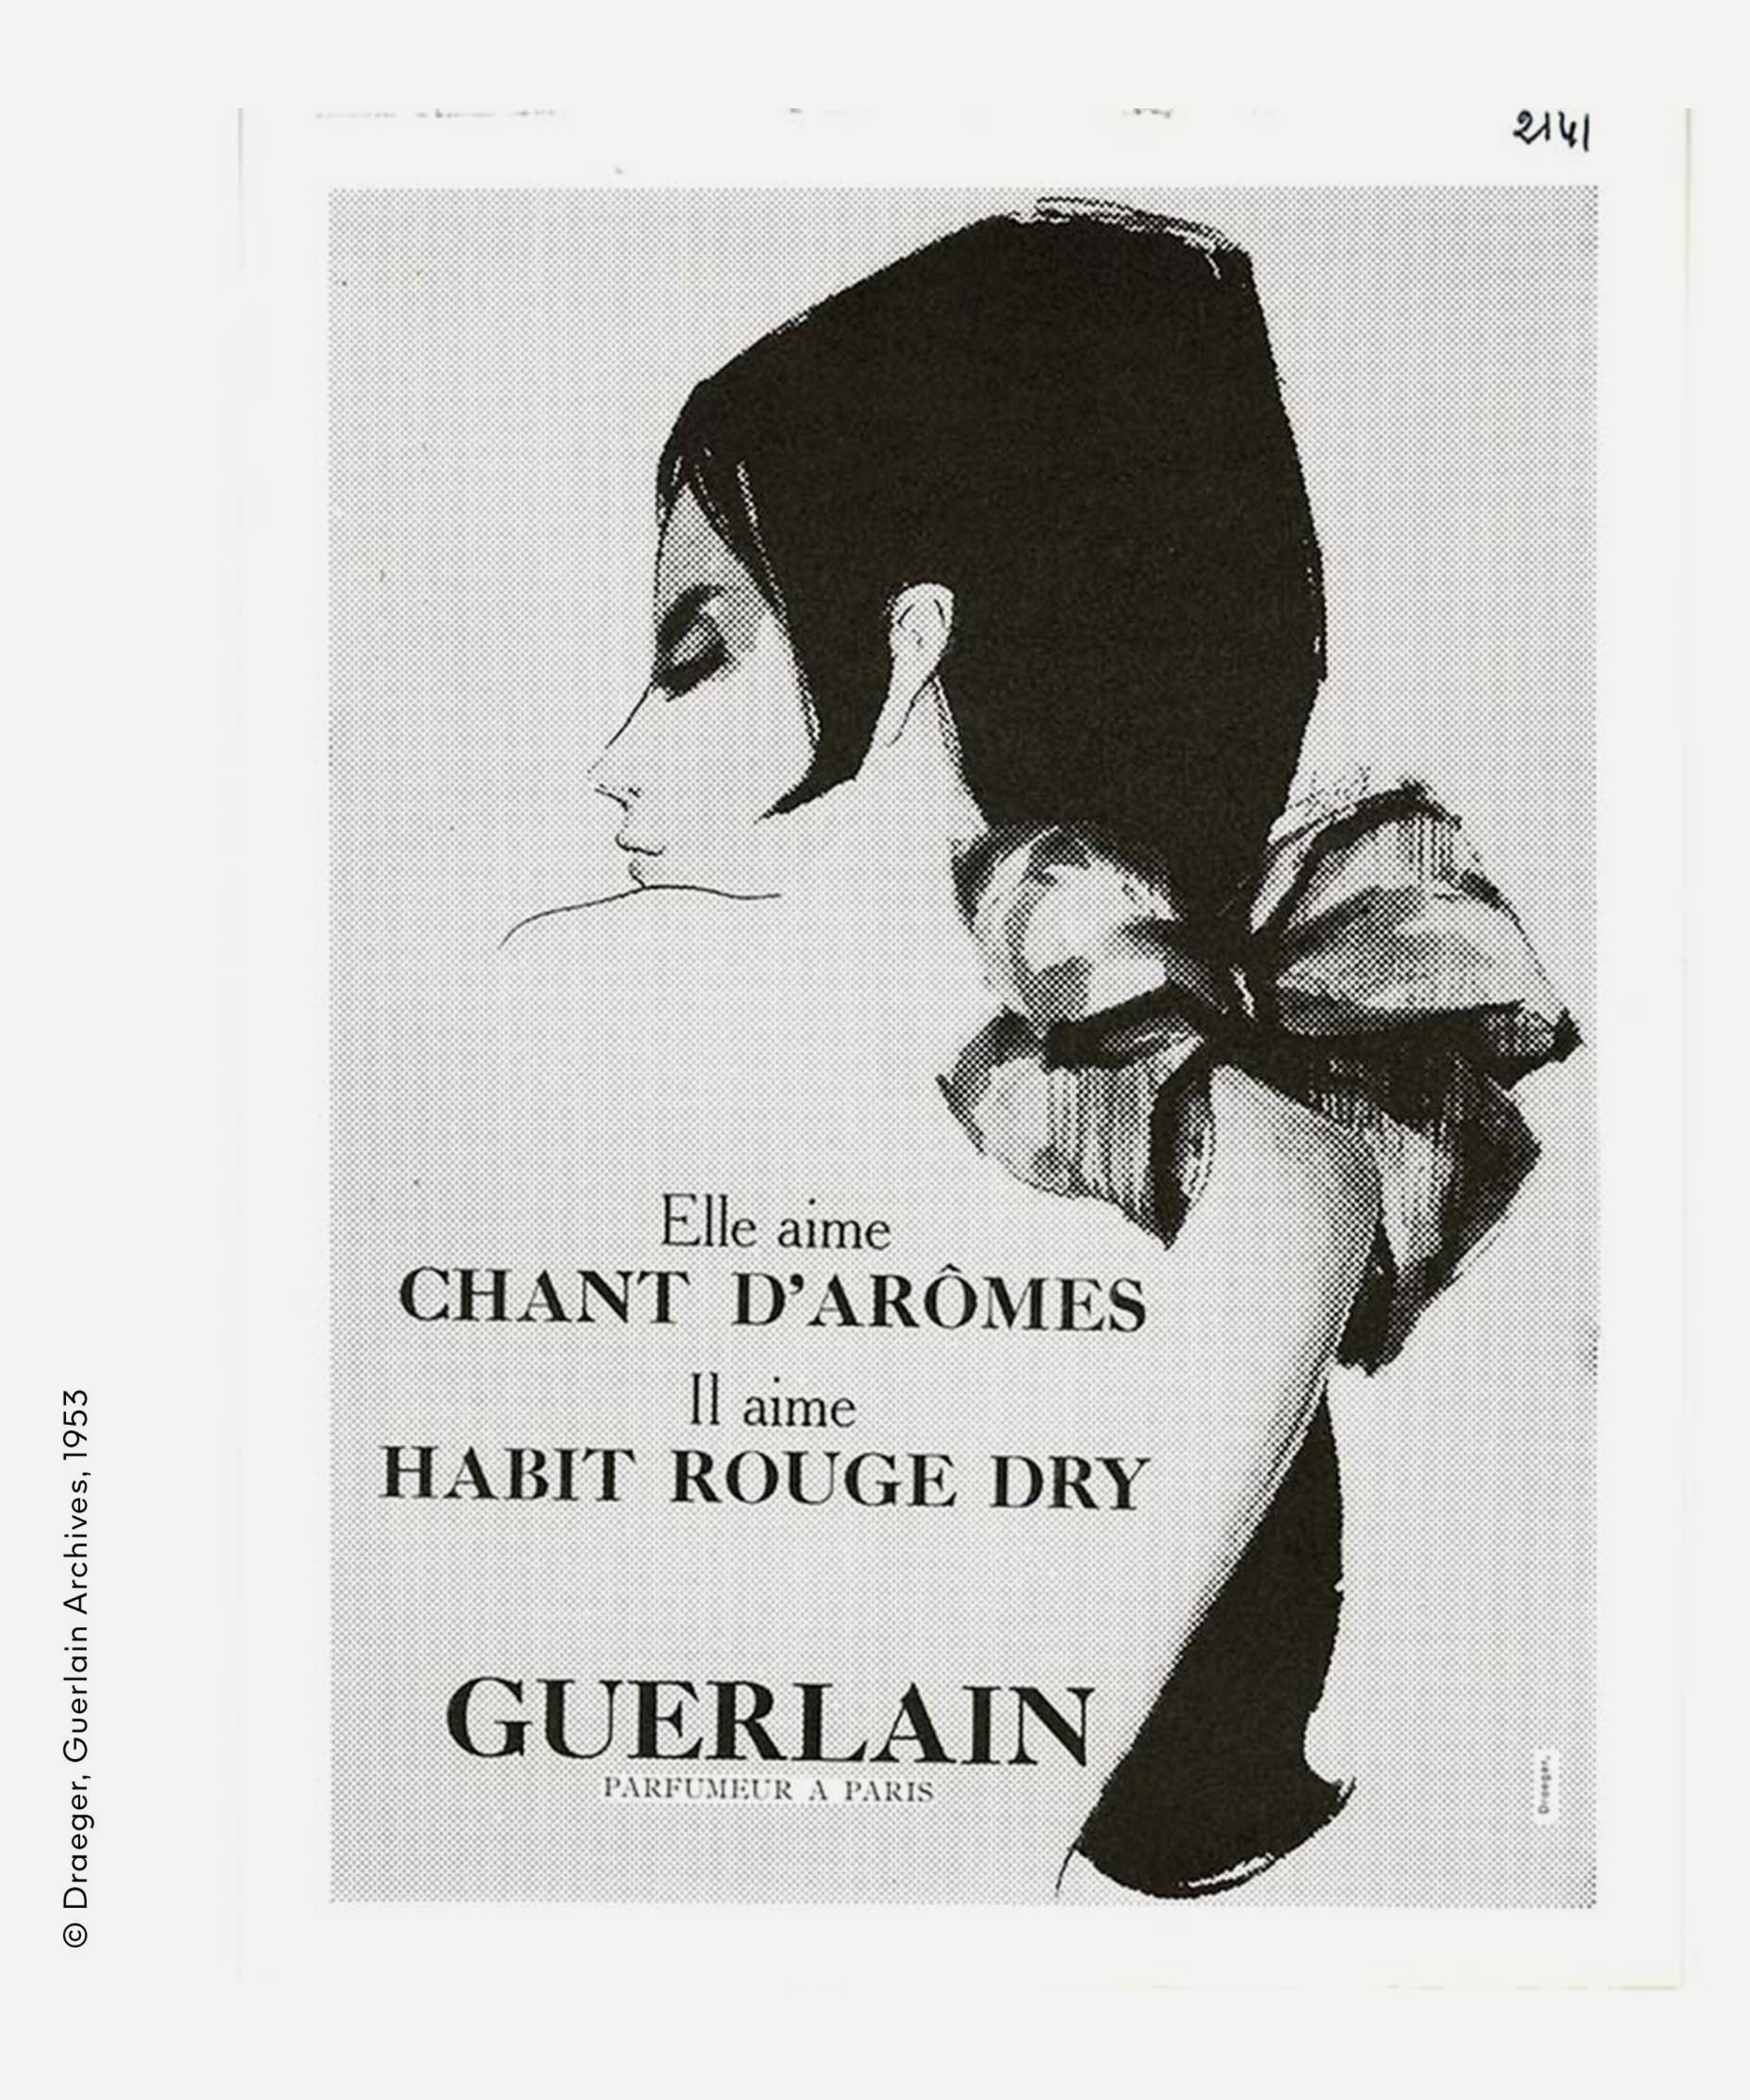 Guerlain - Les Légendaires Chant d'Arômes Eau de Toilette 75ml image number 6